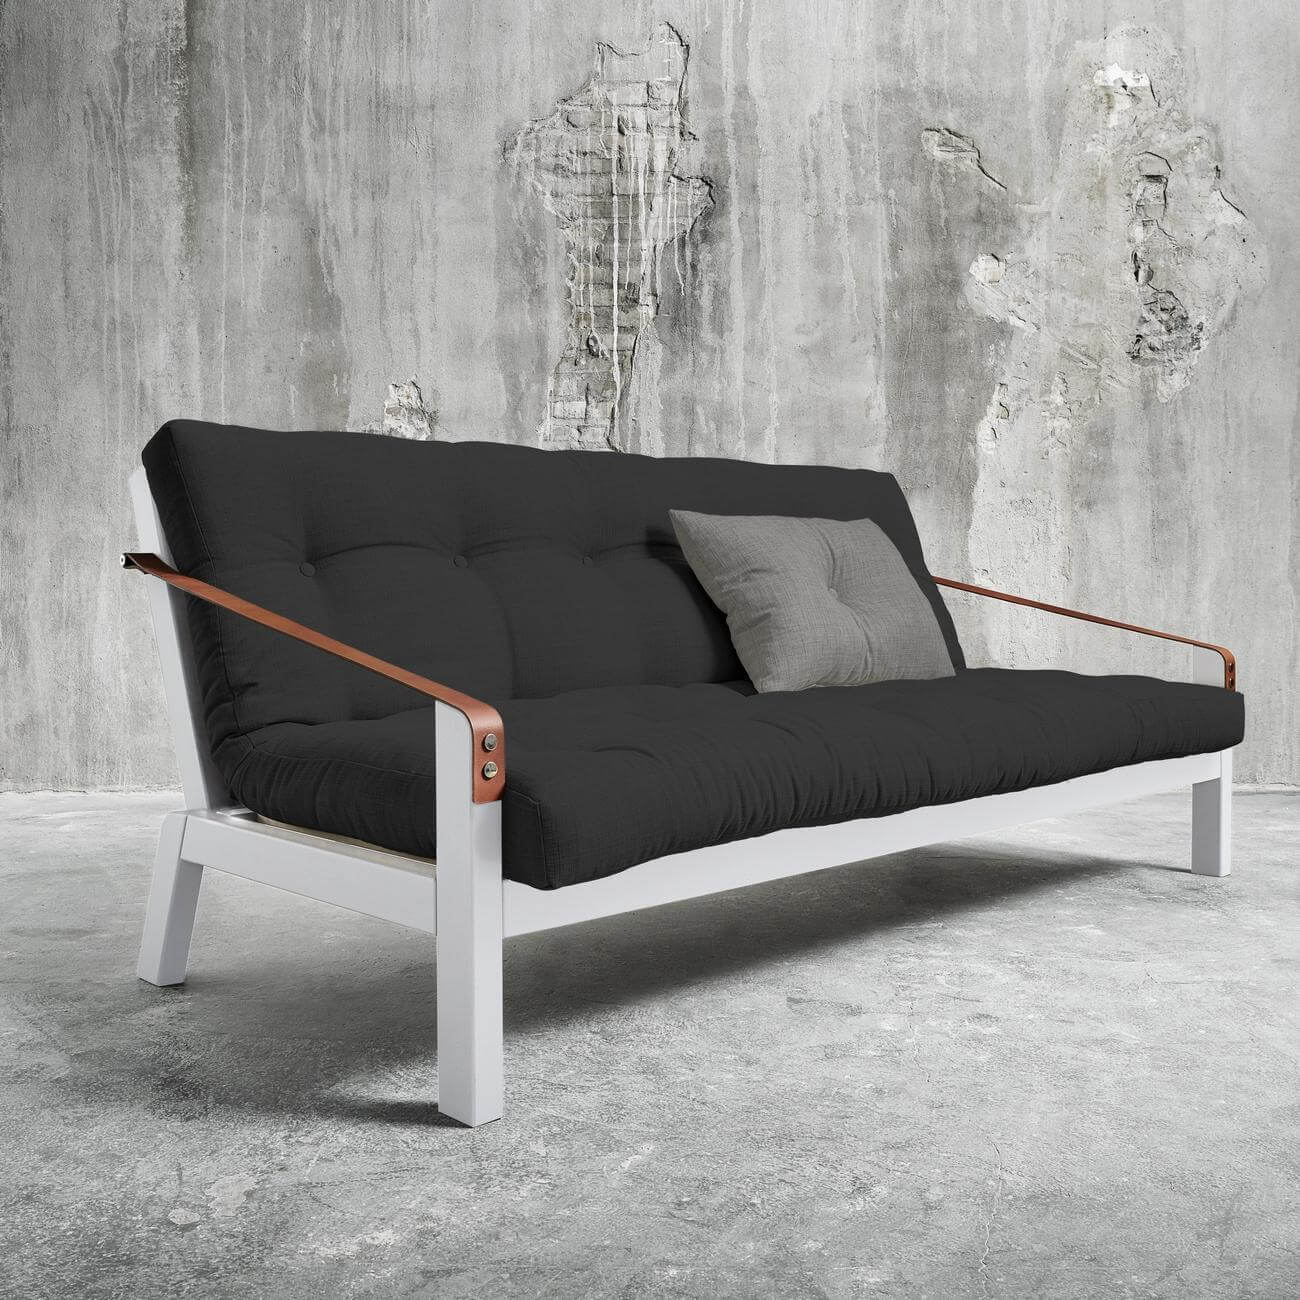 Unique sofa Designs